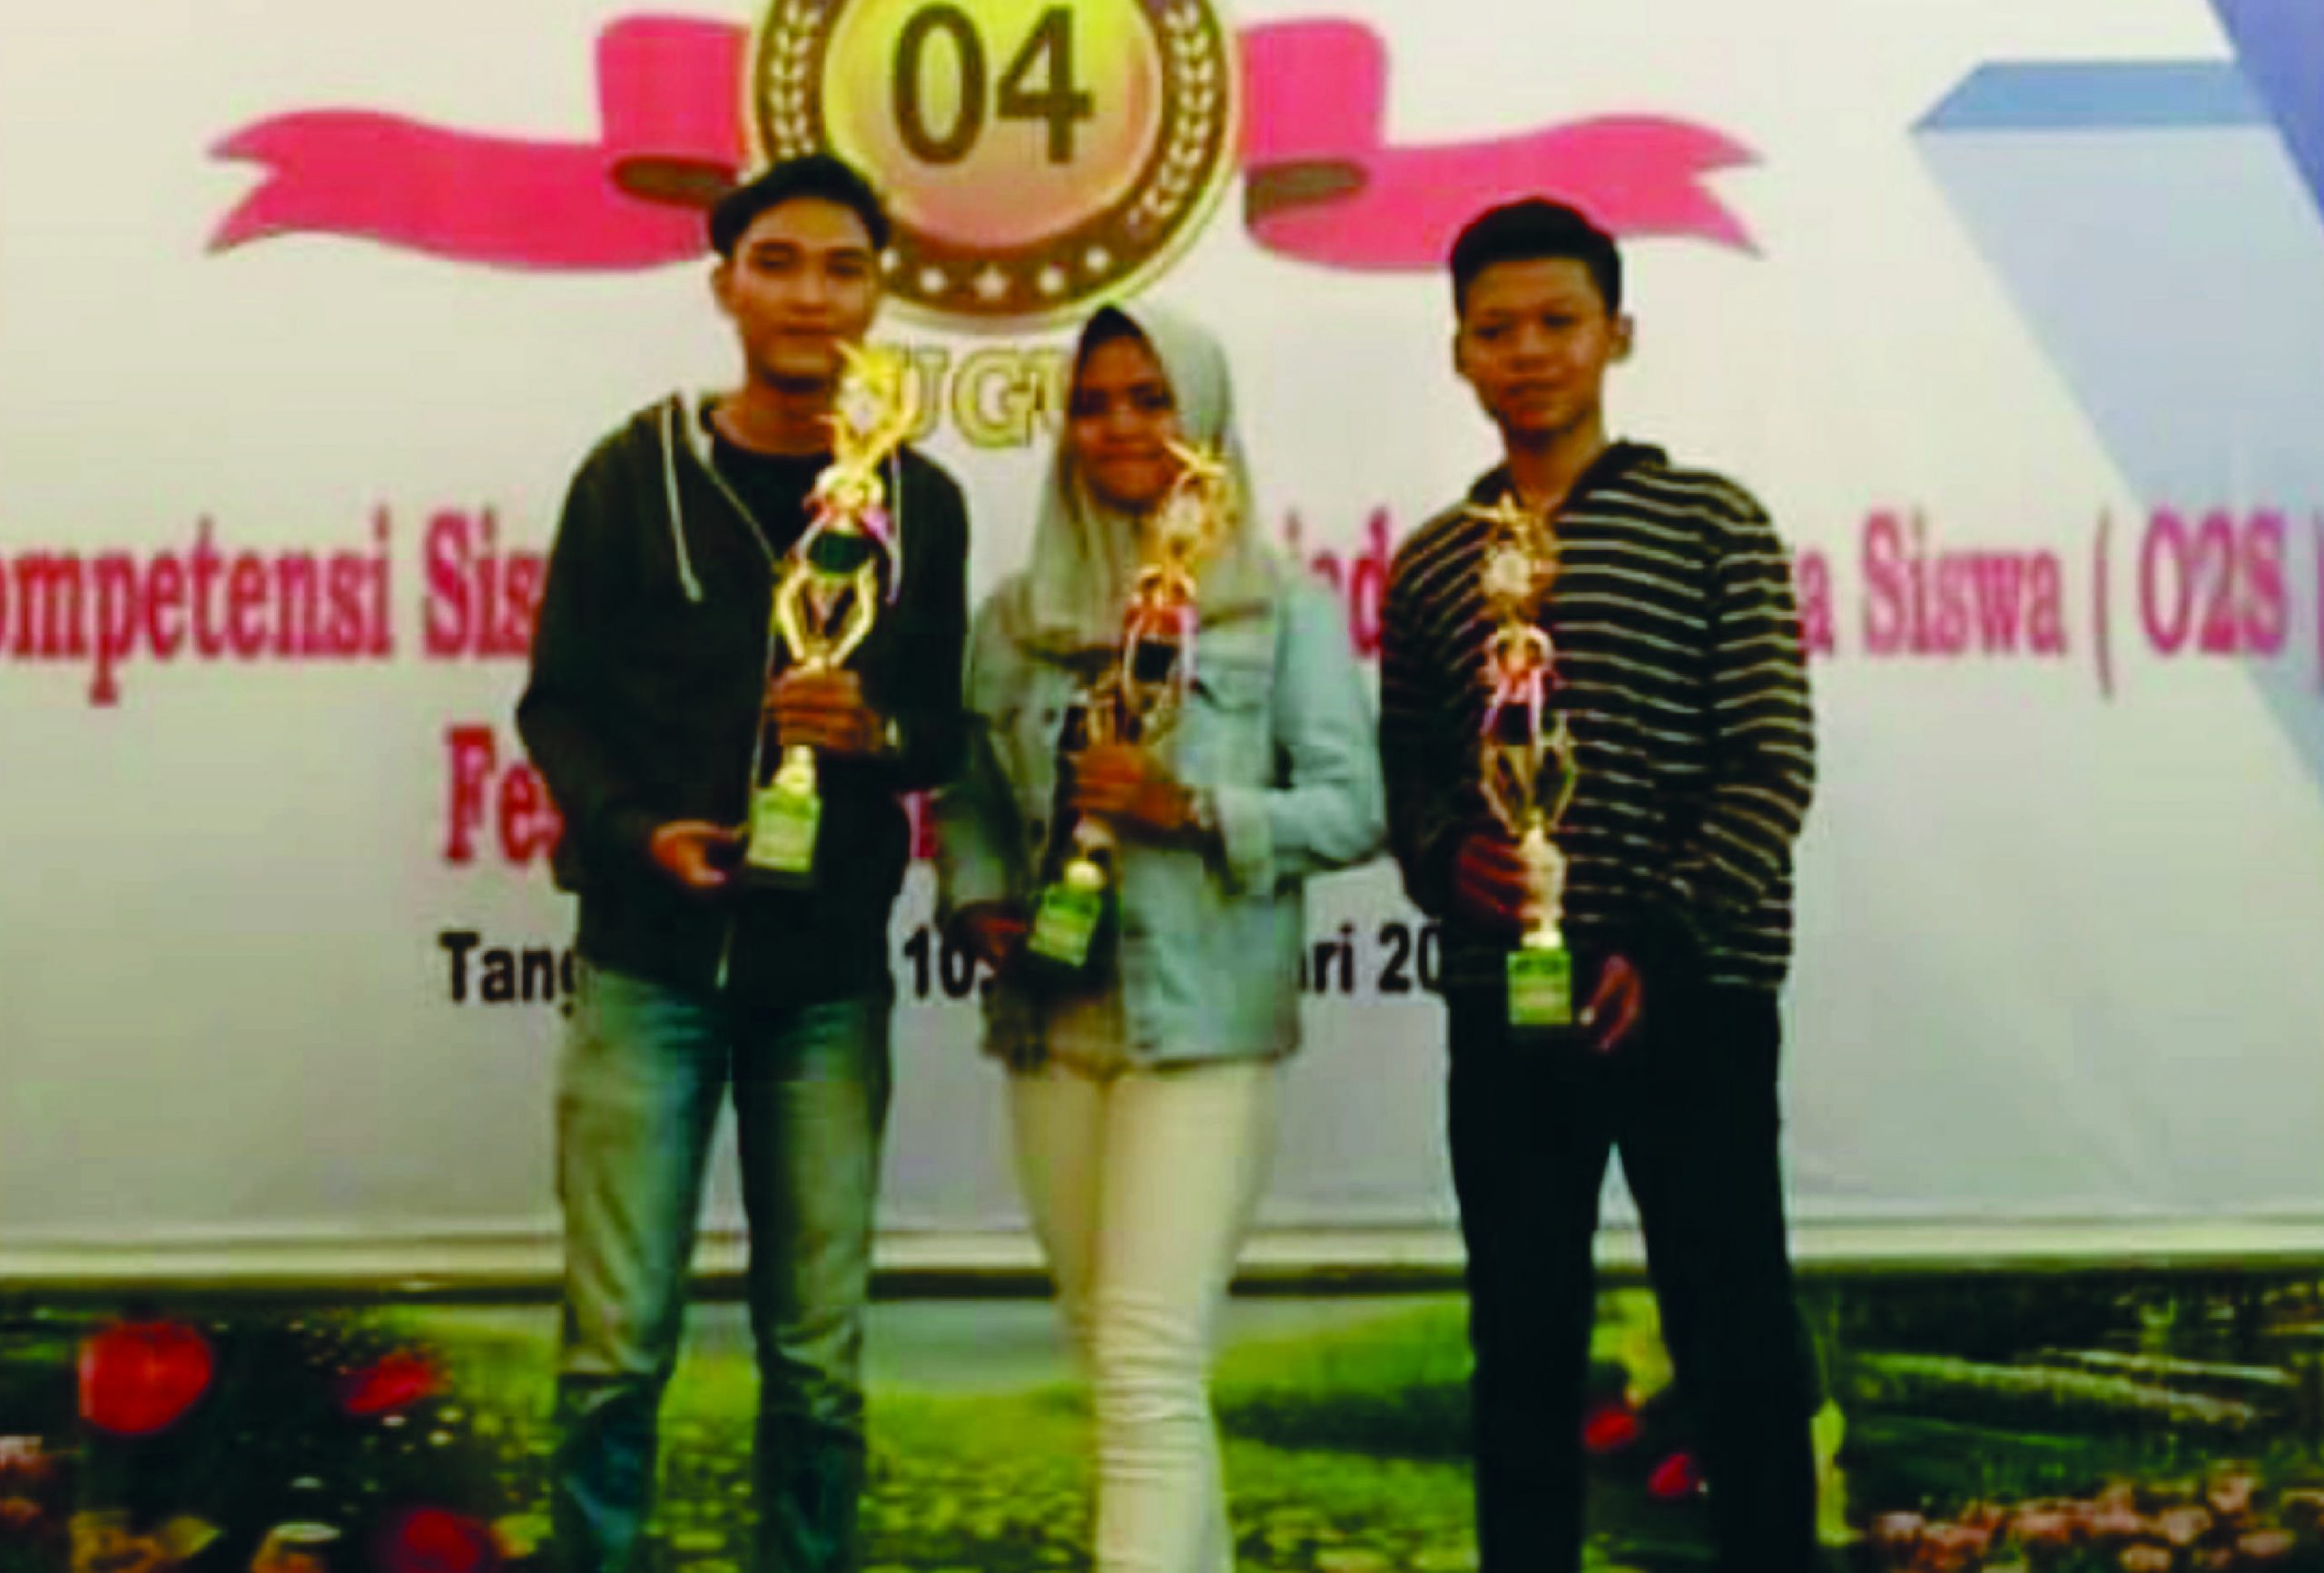 Juara 2 LKS Tingkat Gugus 04 Kota Tangsel 2019 LOMBA SOLO VOCAL